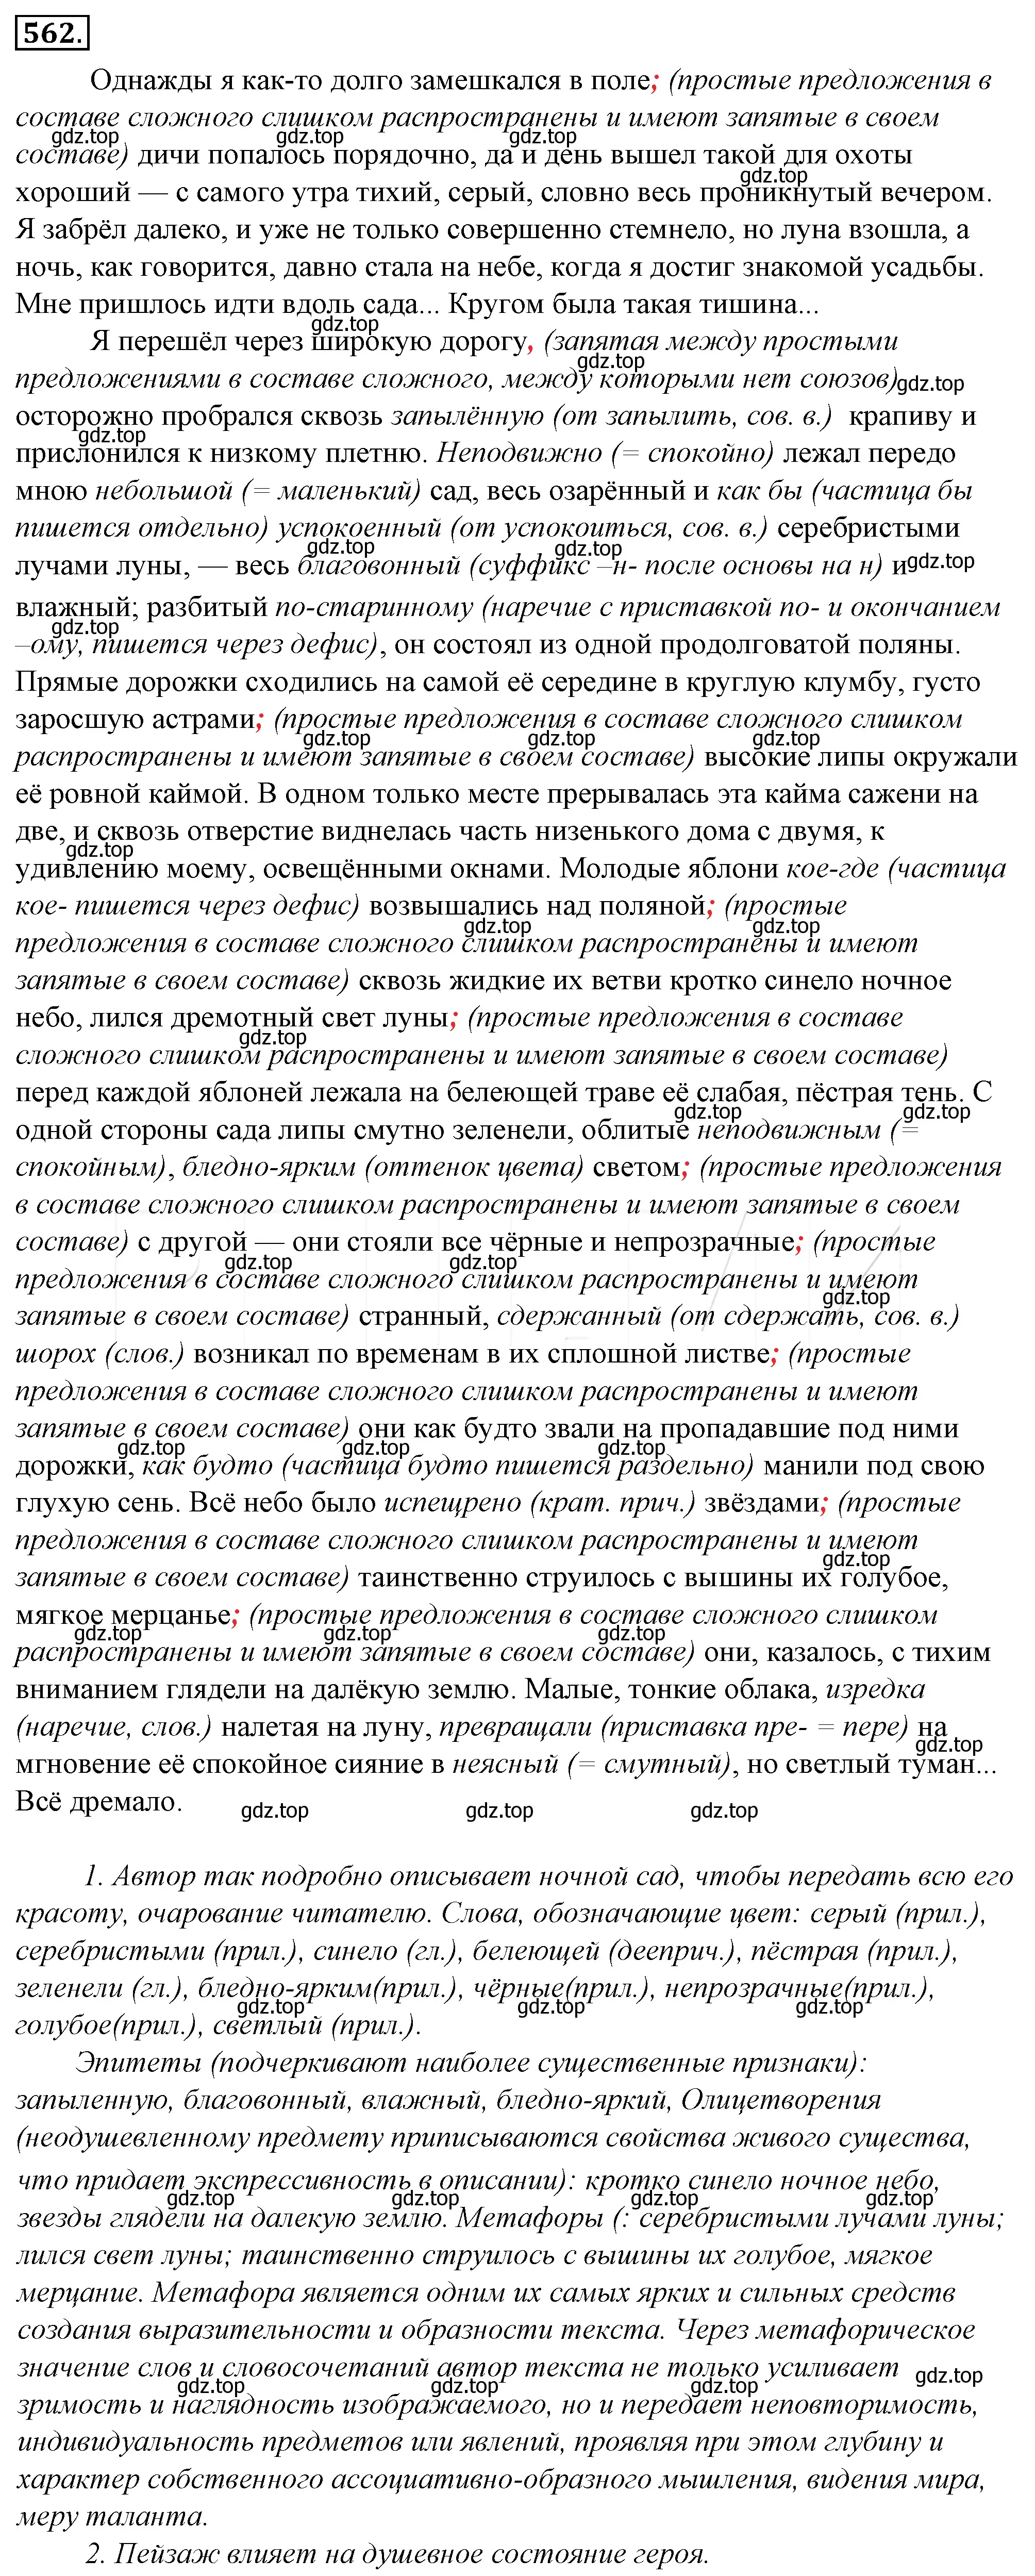 Решение 4. номер 238 (страница 324) гдз по русскому языку 10-11 класс Гольцова, Шамшин, учебник 2 часть